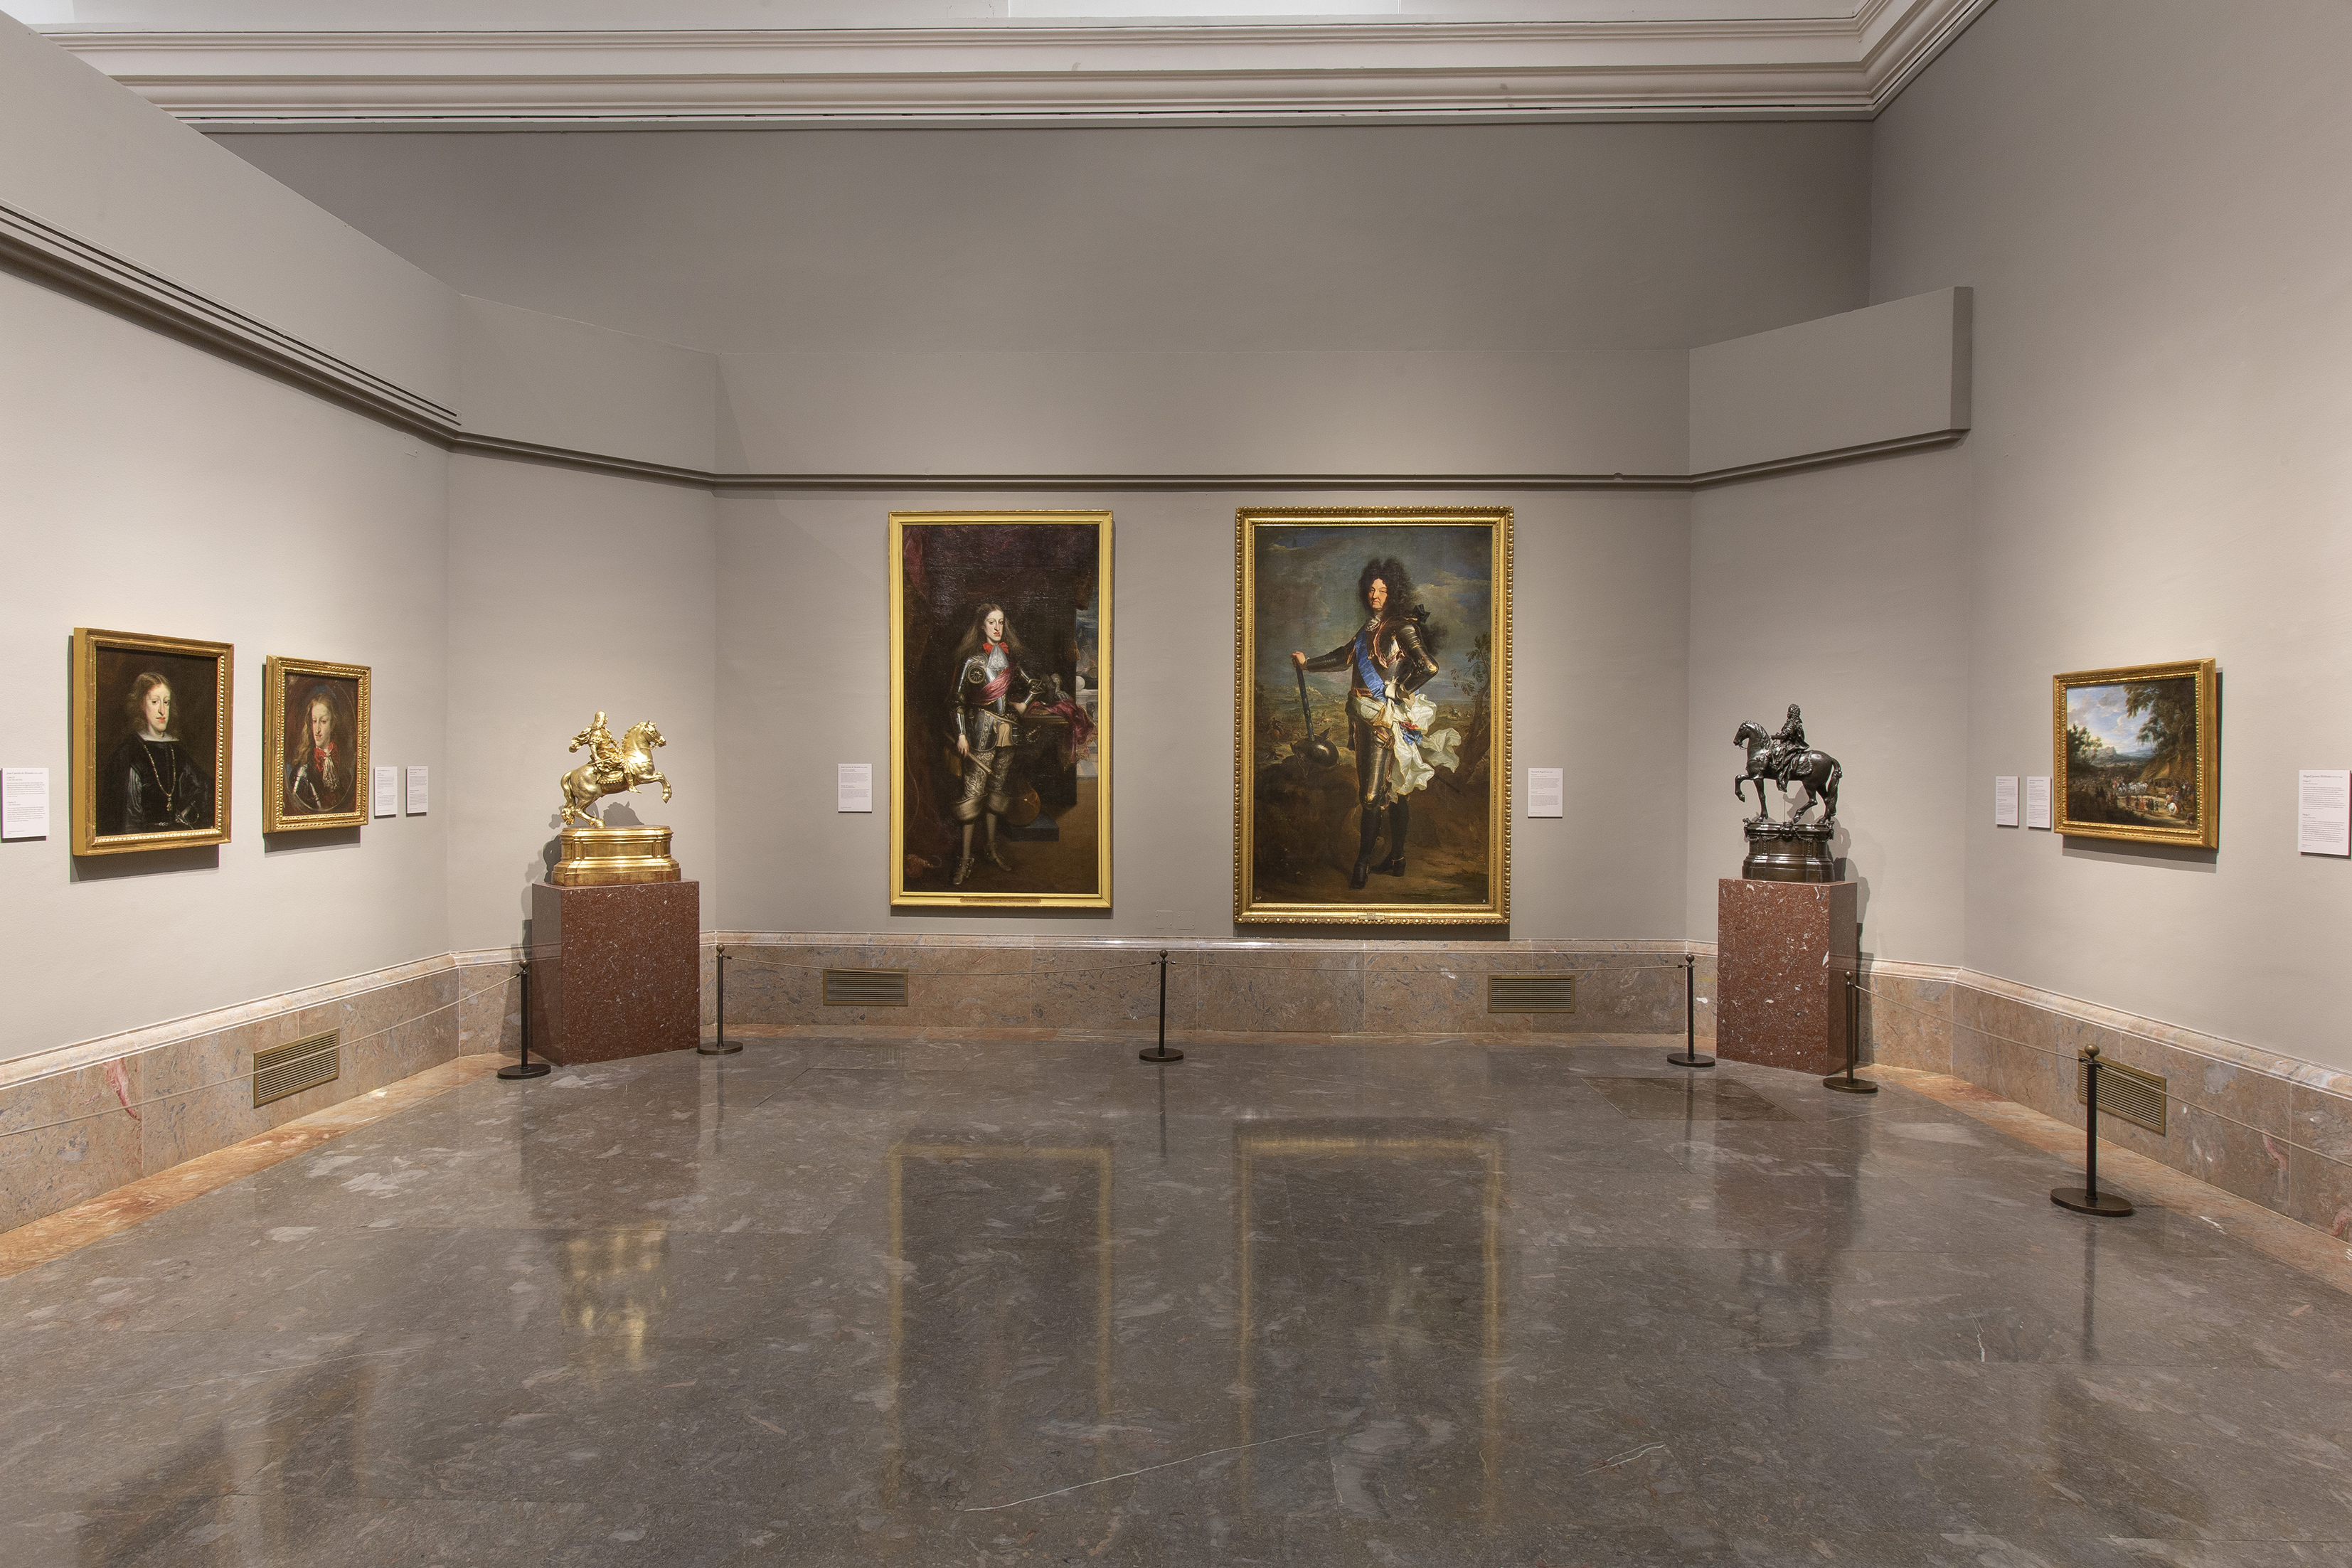 Sala 19 del edificio Villanueva. Museo Nacional del Prado. Colección siglo XVIII. ©Museo Nacional del Prado